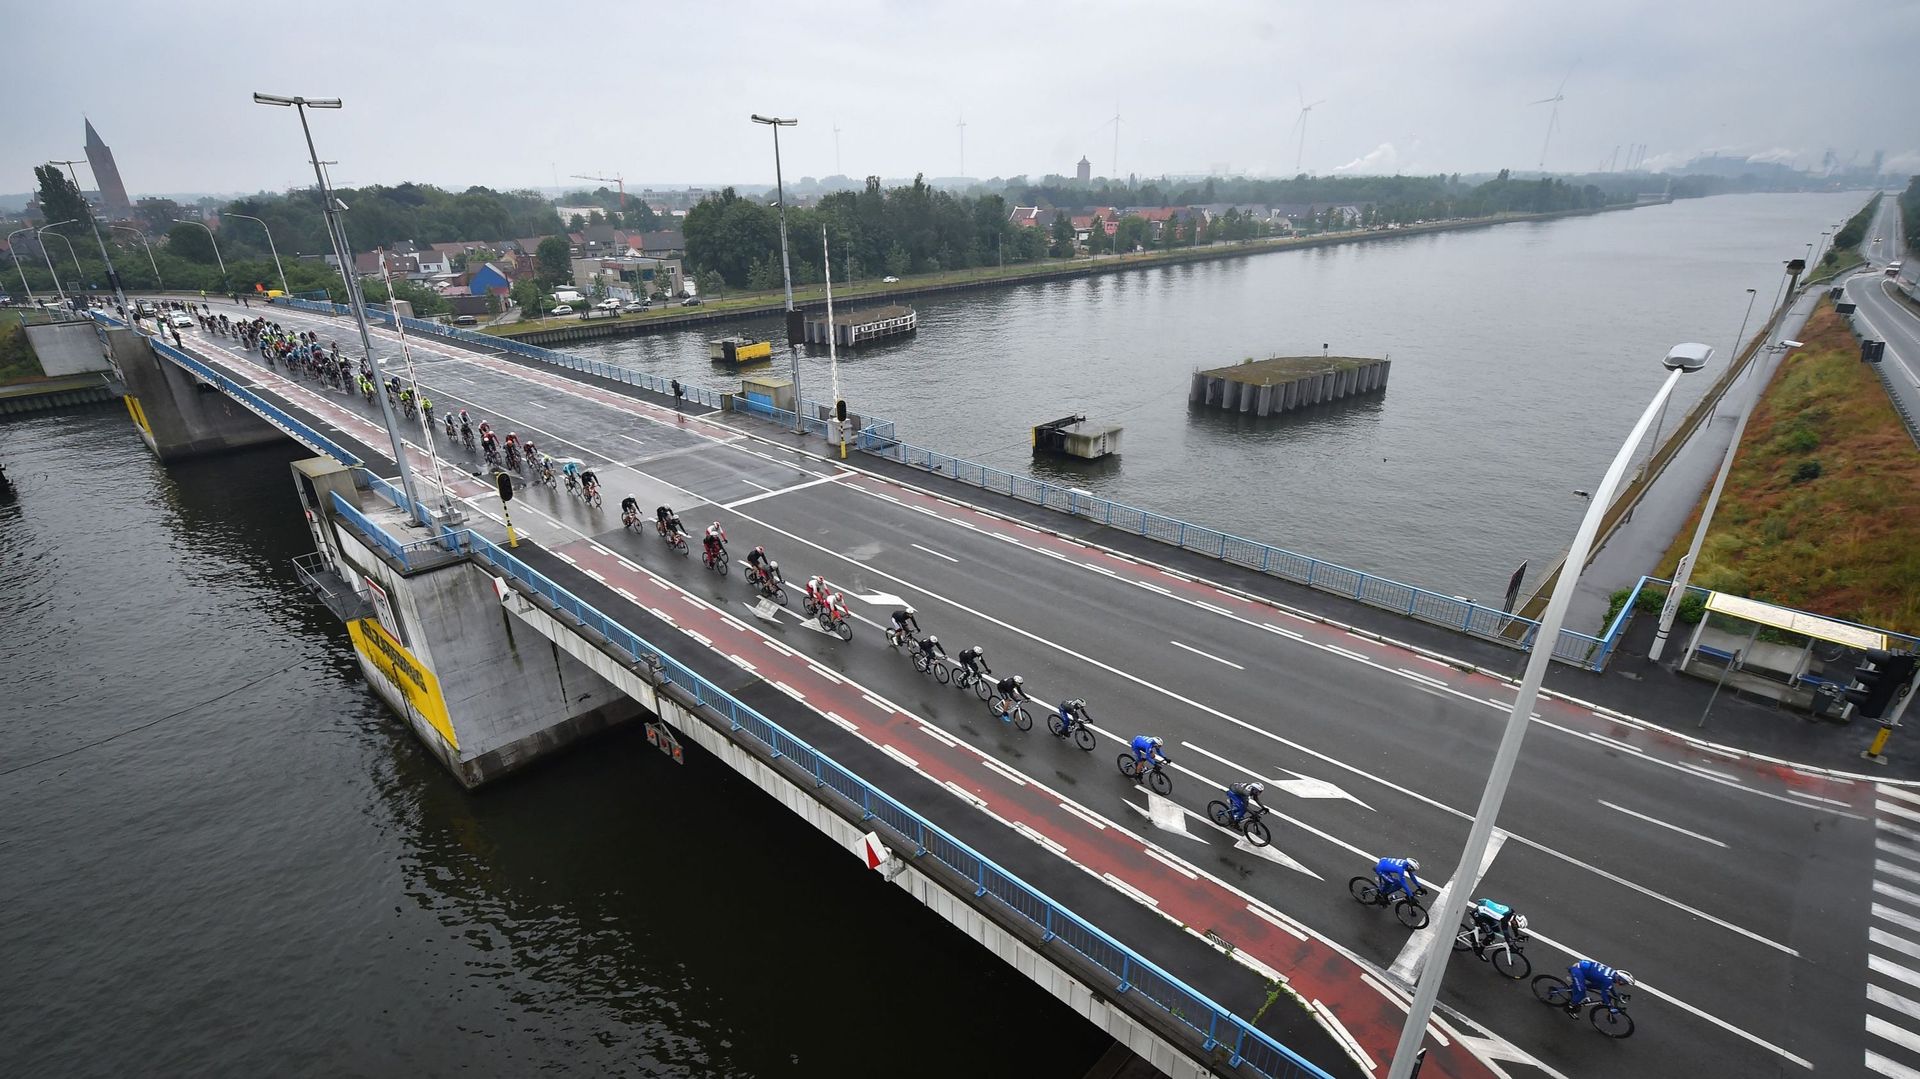 Le peloton de coureurs photographié en train de traverser la brigde sur le canal Gent-Terneuzen à Zelzate, lors de la première étape de la course cycliste Baloise Belgium Tour, 184,3km de Sint-Niklaas à Knokke-Heist mercredi 12 juin 2019.